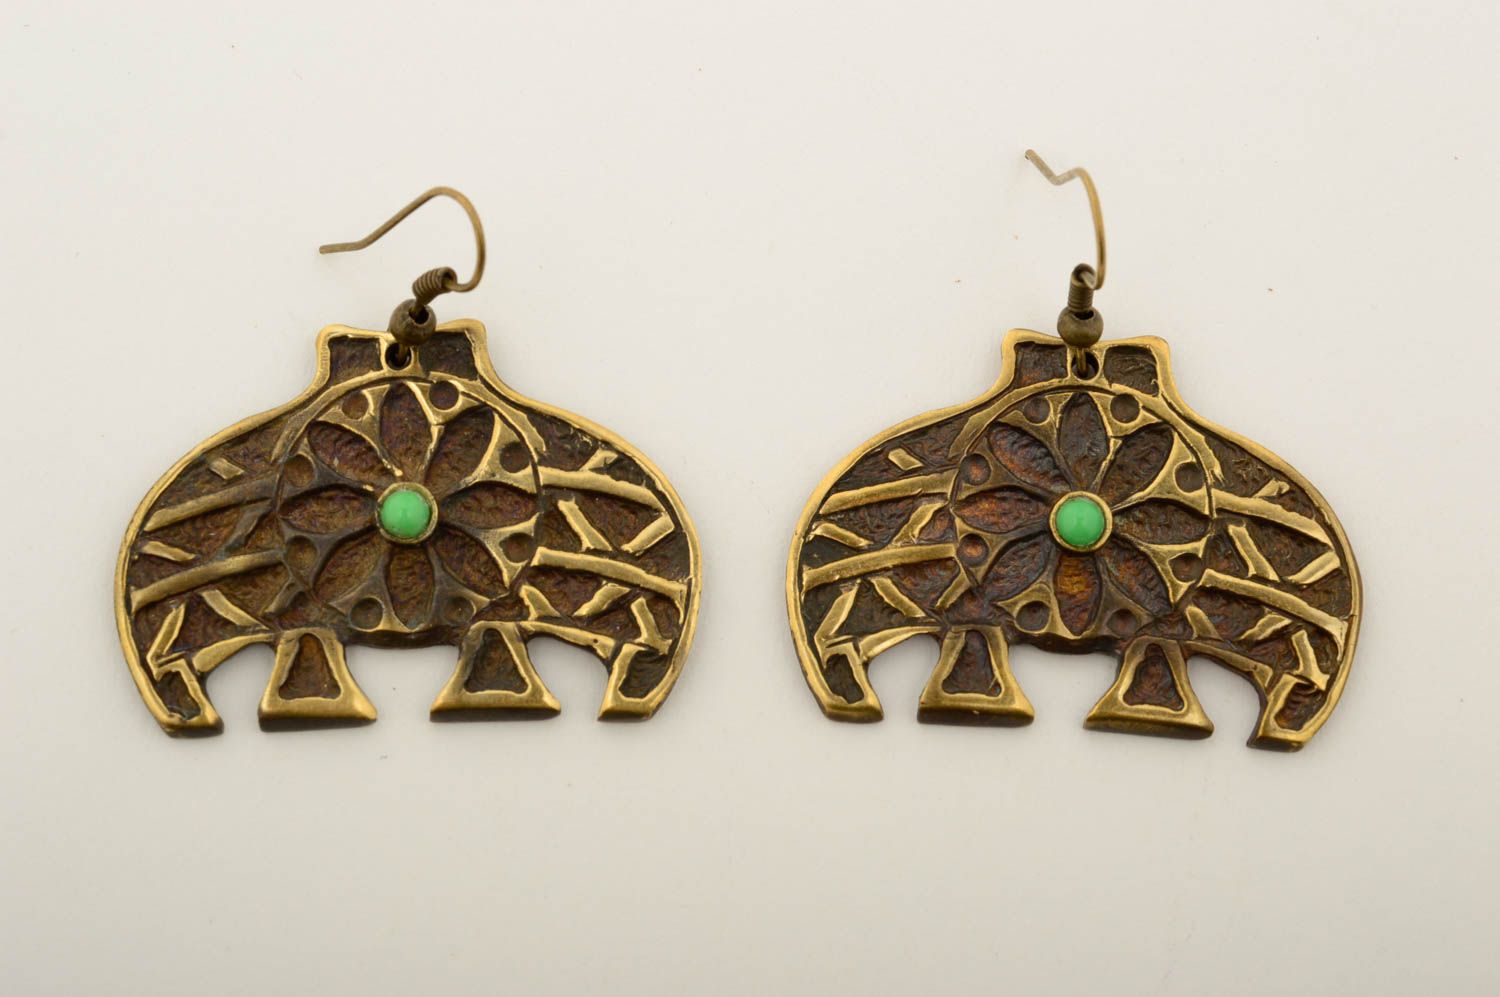 Unusual handmade metal earrings gemstone earrings cool jewelry designs photo 3